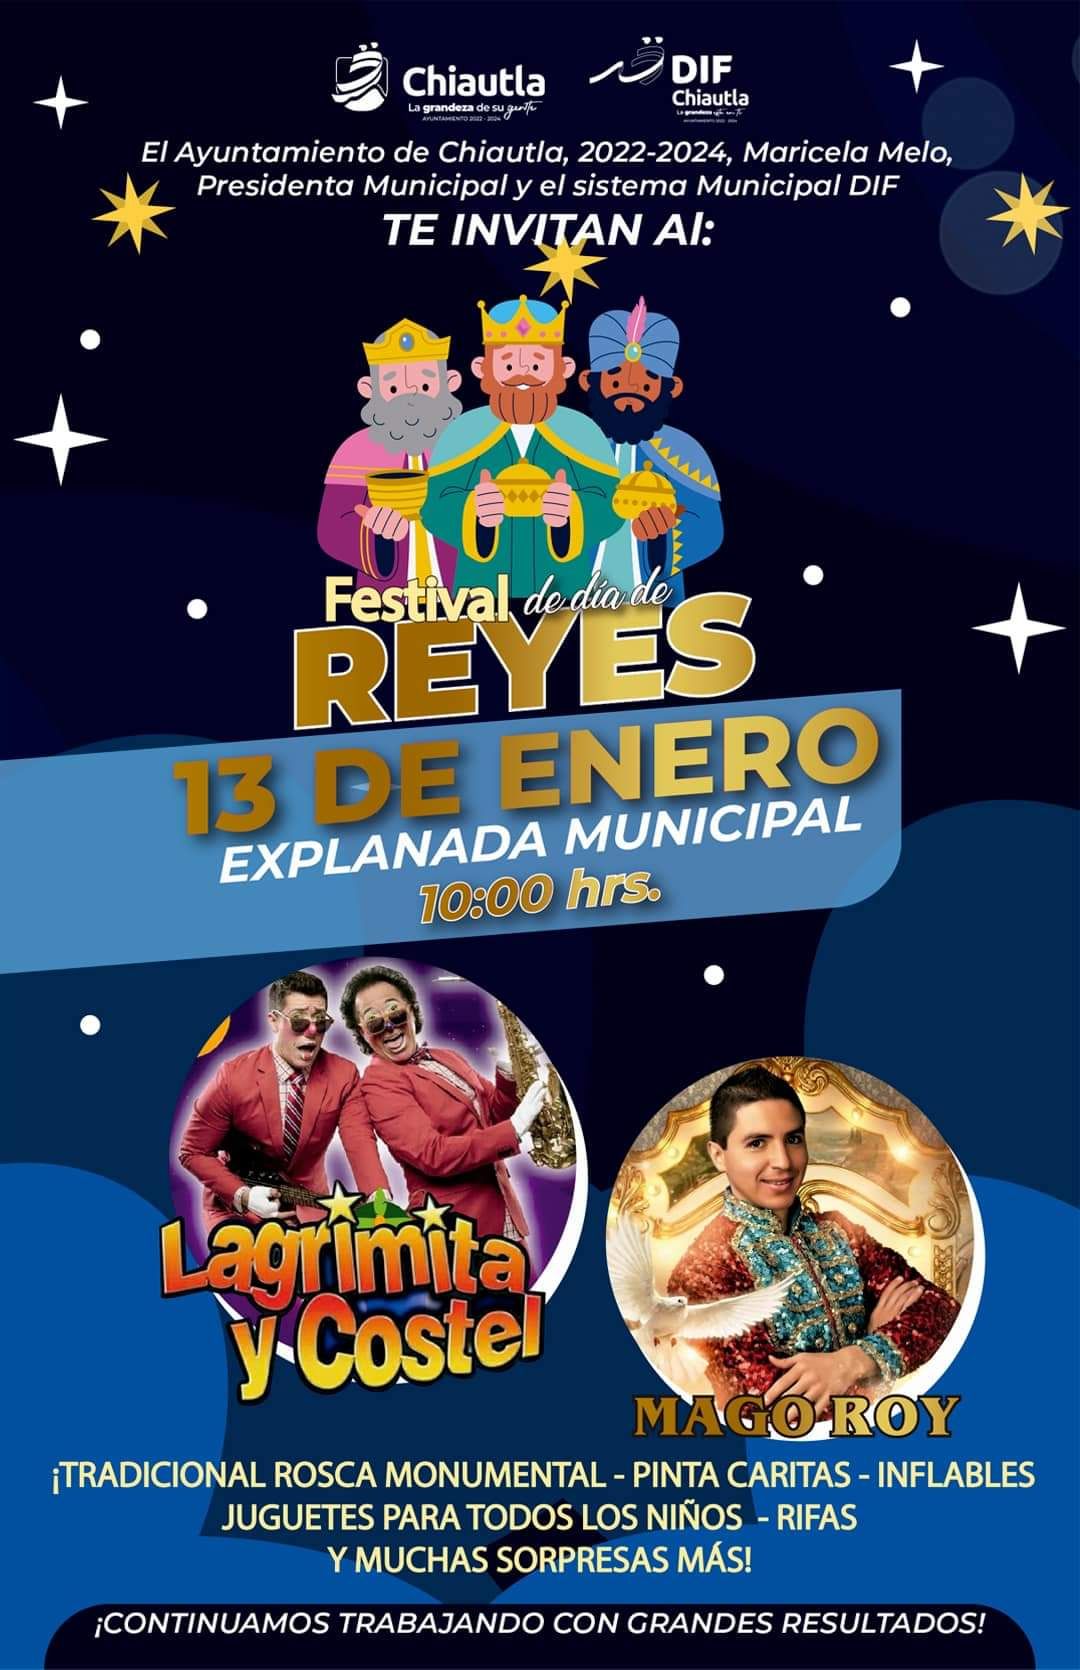 En Chiautla invita la Alcaldesa Maricela Melo el 13 de Enero y su ayuntamiento a festejar el día Reyes Magos en la explanada municipal 